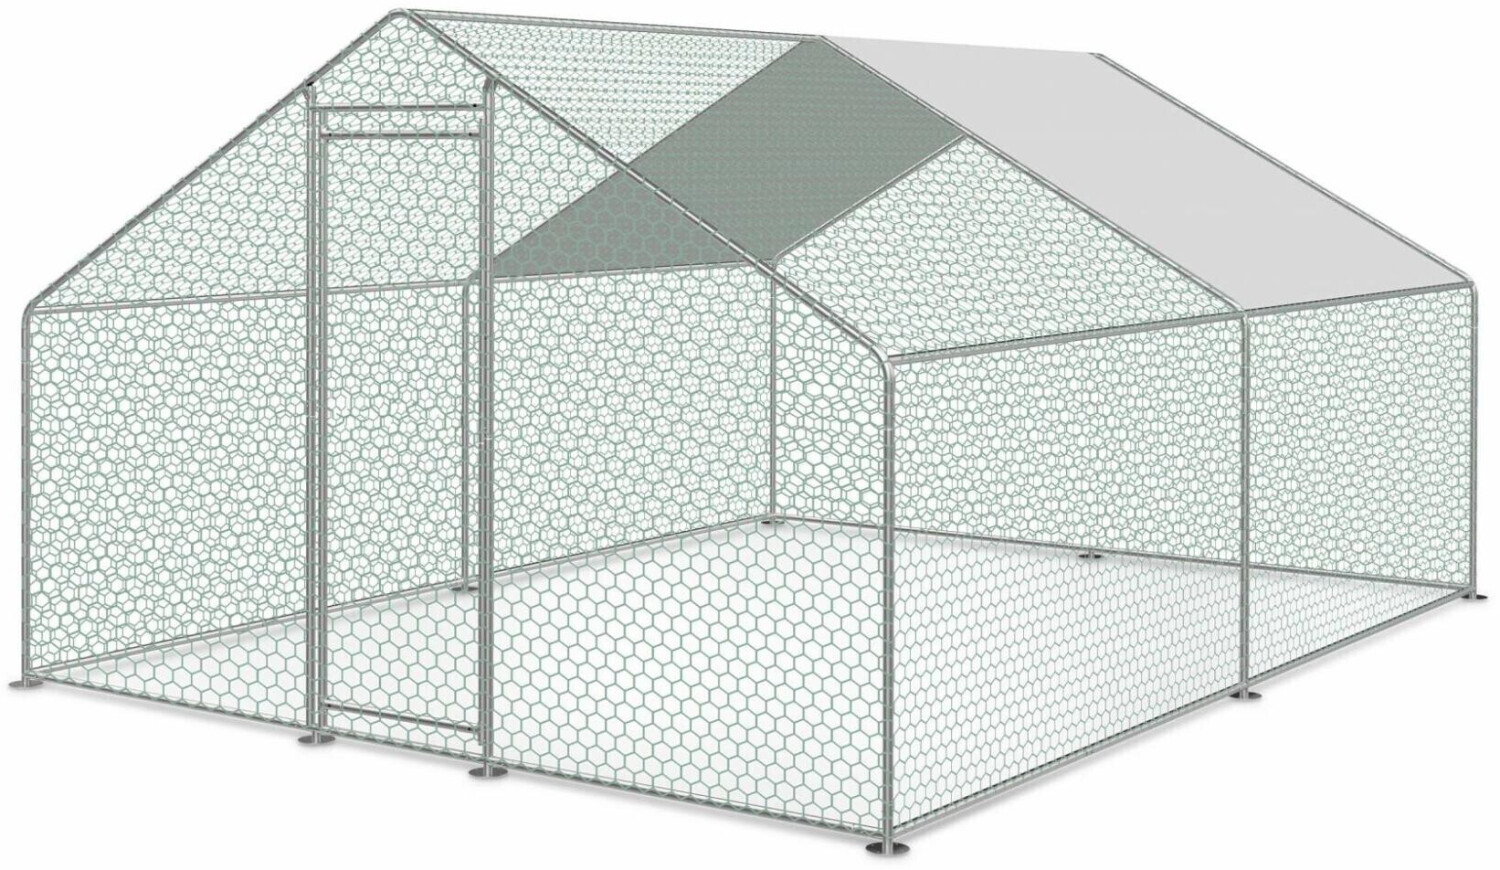 Enclos pour poulailler 6m² - Babette - Volière en acier galvanisé. bâche de  toit imperméable et anti UV. porte avec